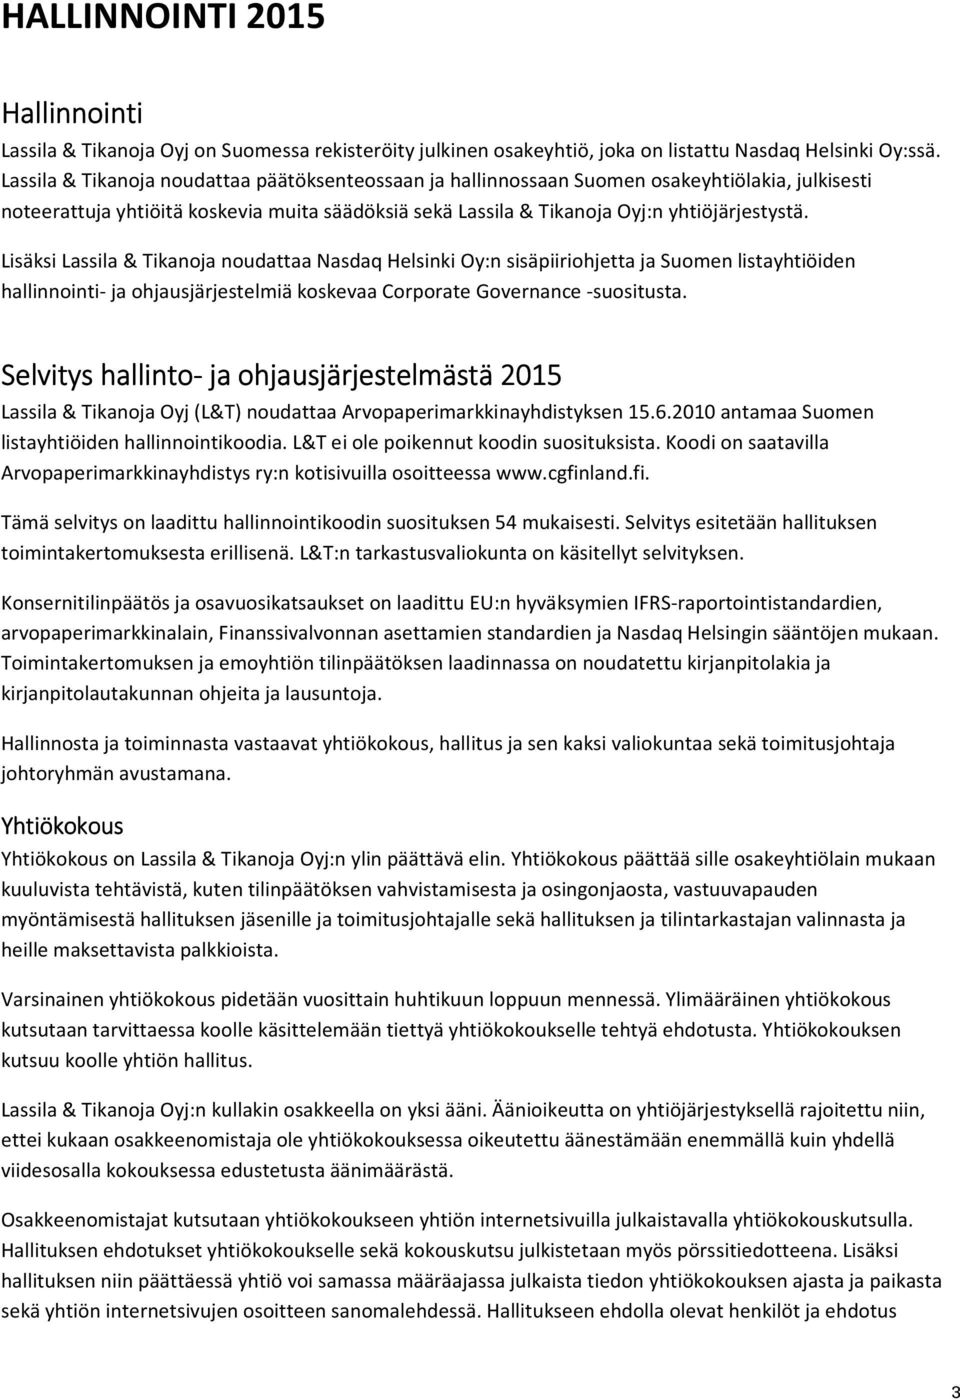 Lisäksi Lassila & Tikanoja noudattaa Nasdaq Helsinki Oy:n sisäpiiriohjetta ja Suomen listayhtiöiden hallinnointi- ja ohjausjärjestelmiä koskevaa Corporate Governance -suositusta.